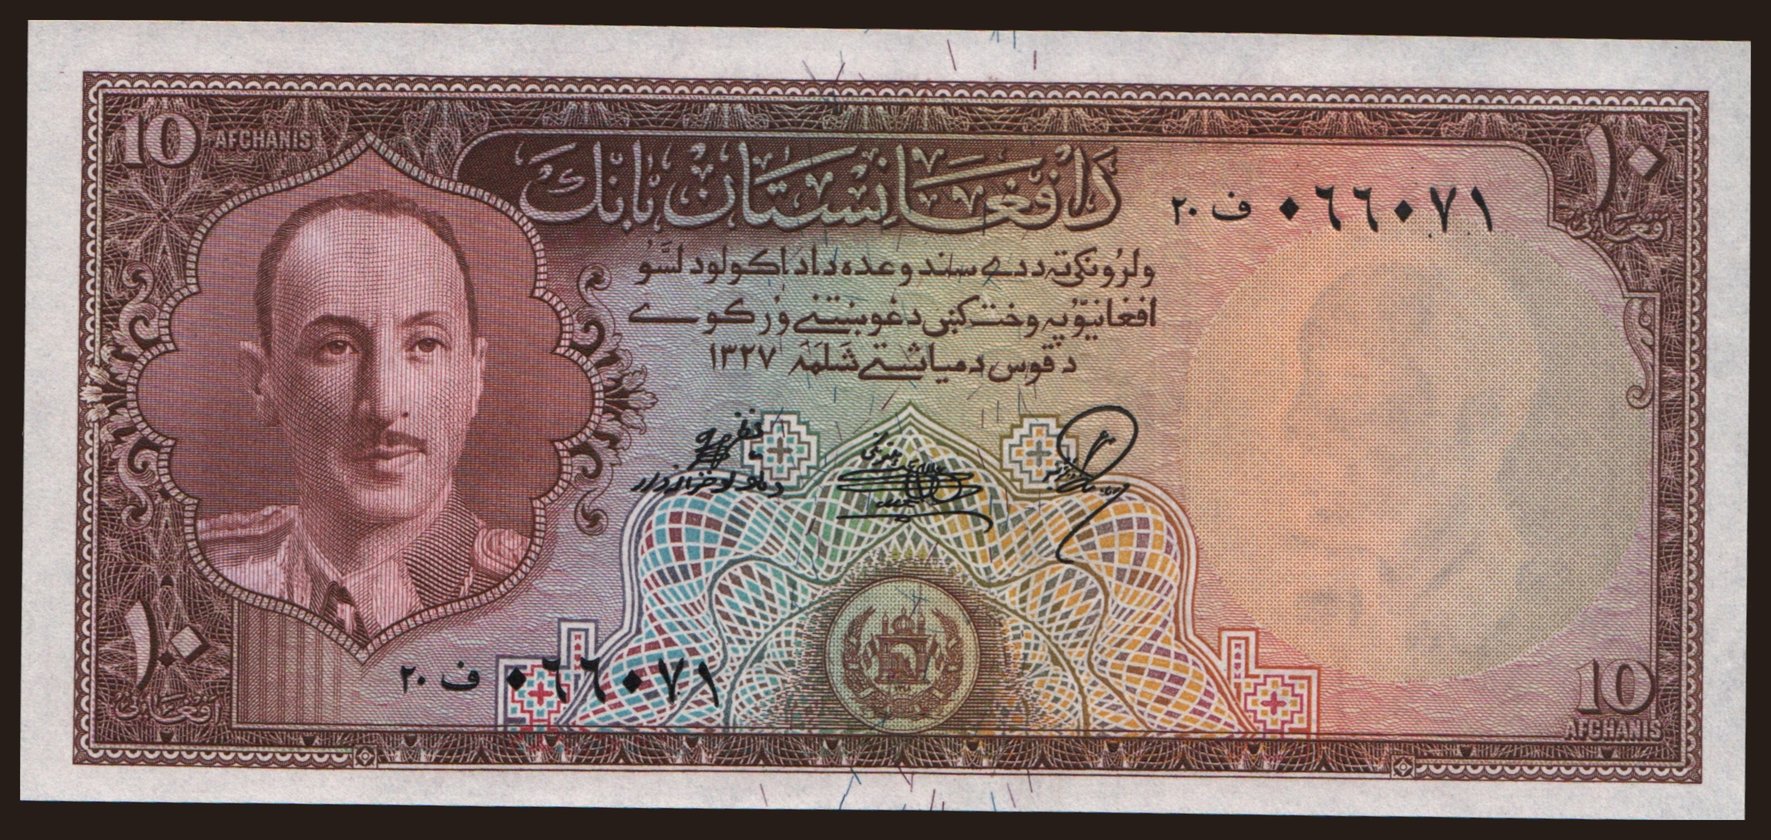 10 afghanis, 1948